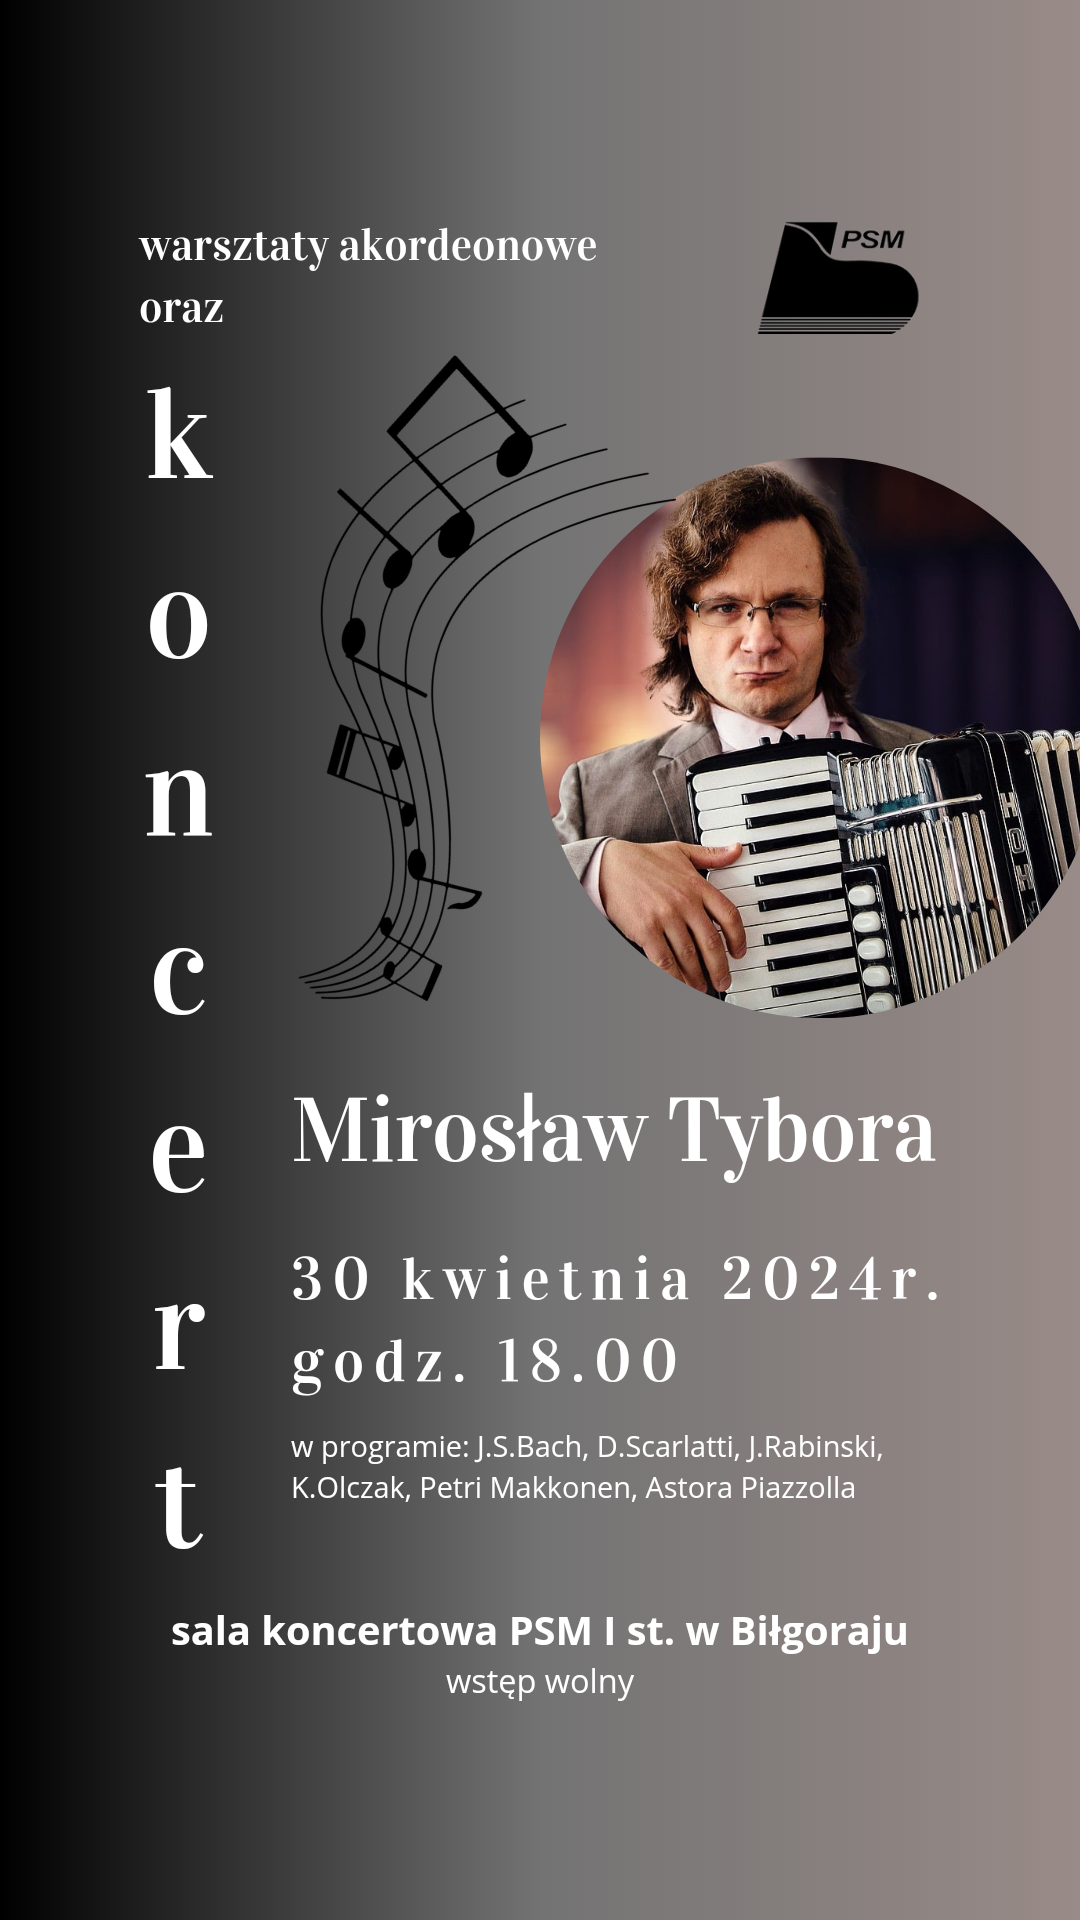 Plakat informujący o warsztatach akordeonowych oraz koncercie Mirosława Tybory w dni 30 kwietnia 2024r. Na ciemnym tle białymi literami wyżej wymienione informacje oraz zdjęcie artysty.